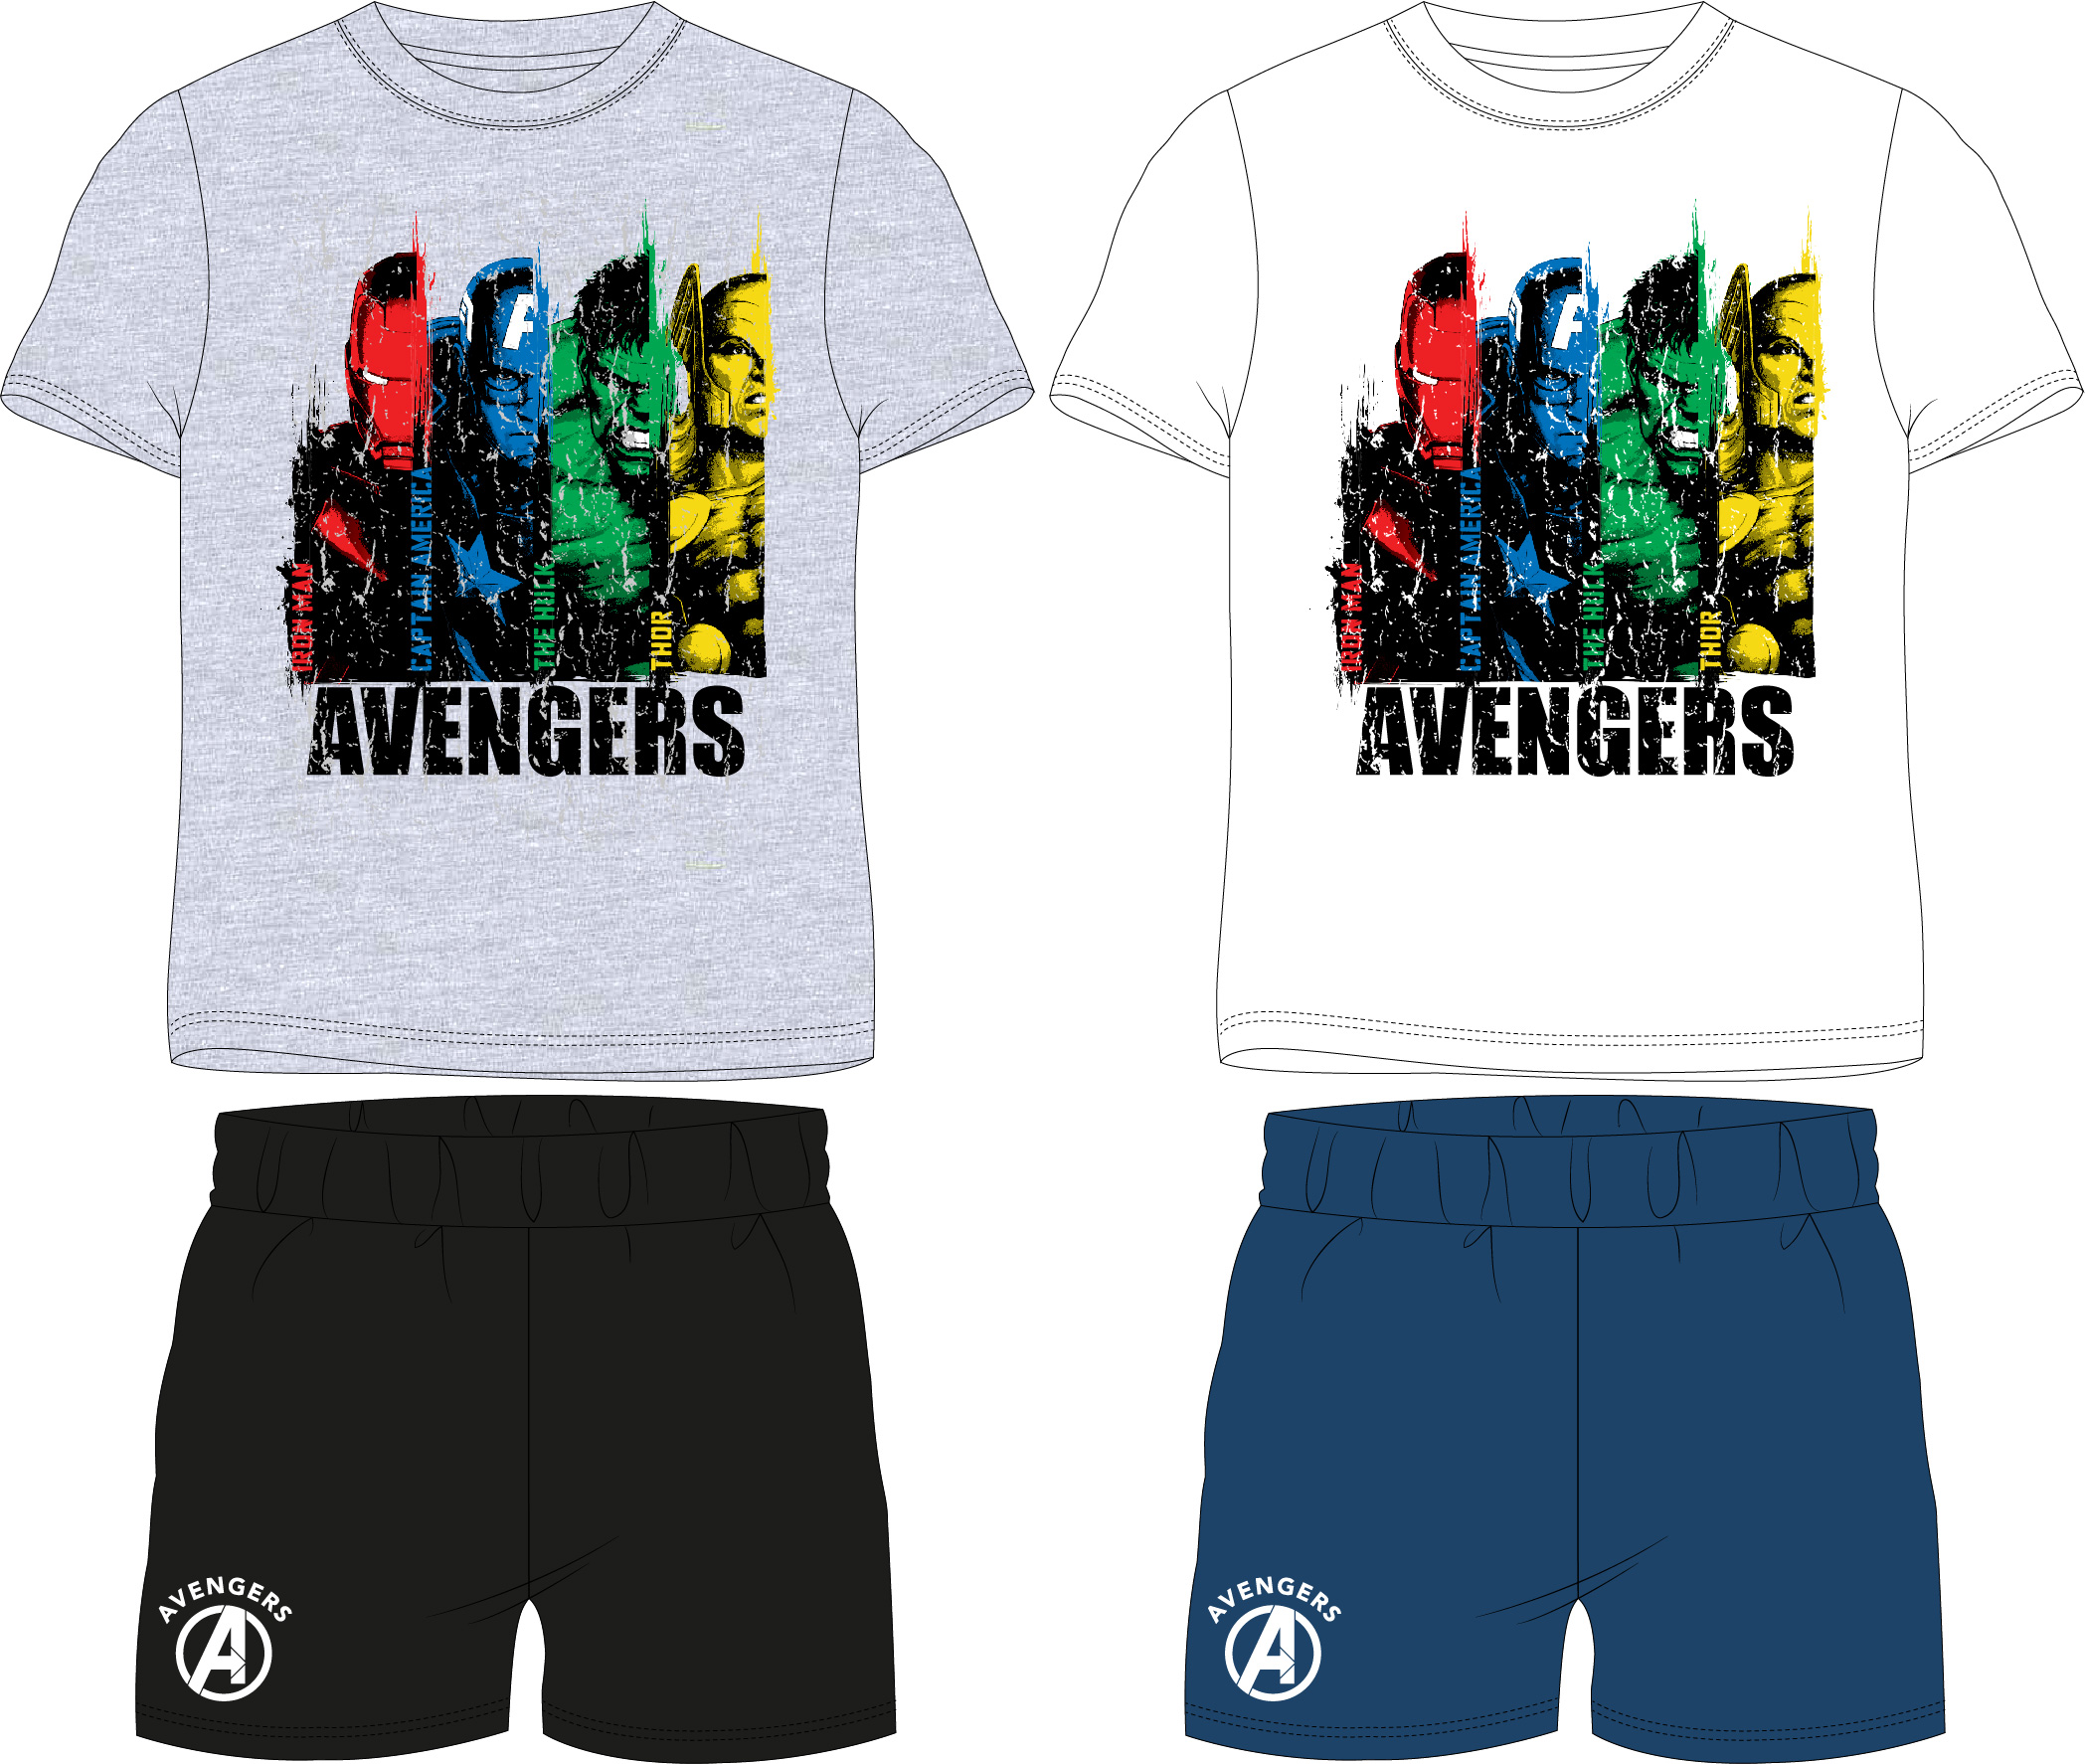 Avangers - licence Chlapecké pyžamo - Avengers 5204438, bílá / modrá Barva: Bílá, Velikost: 146-152